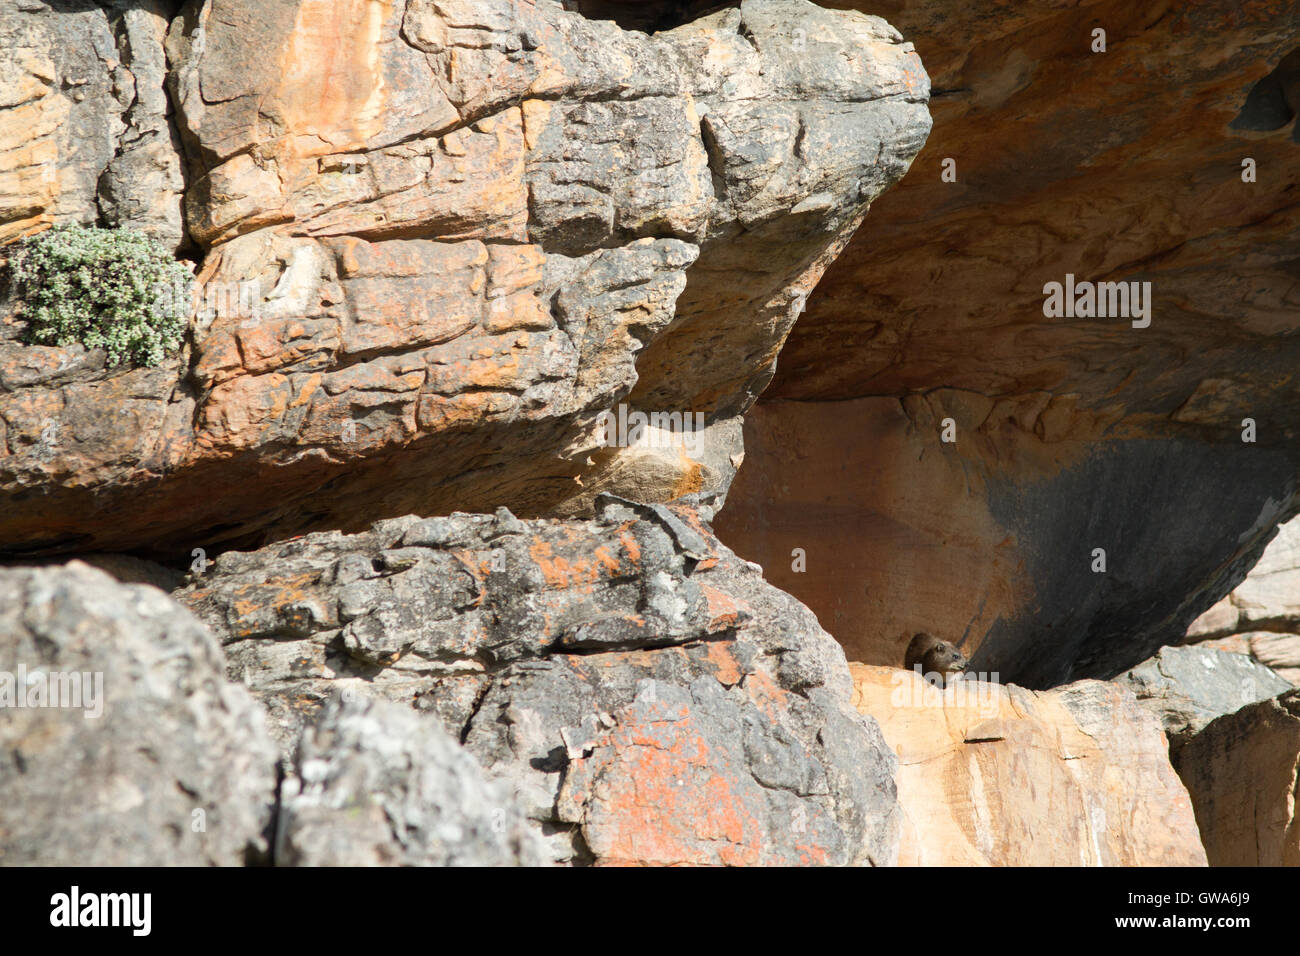 The dassie rat (Petromus typicus) in its habitat, South Africa Stock Photo